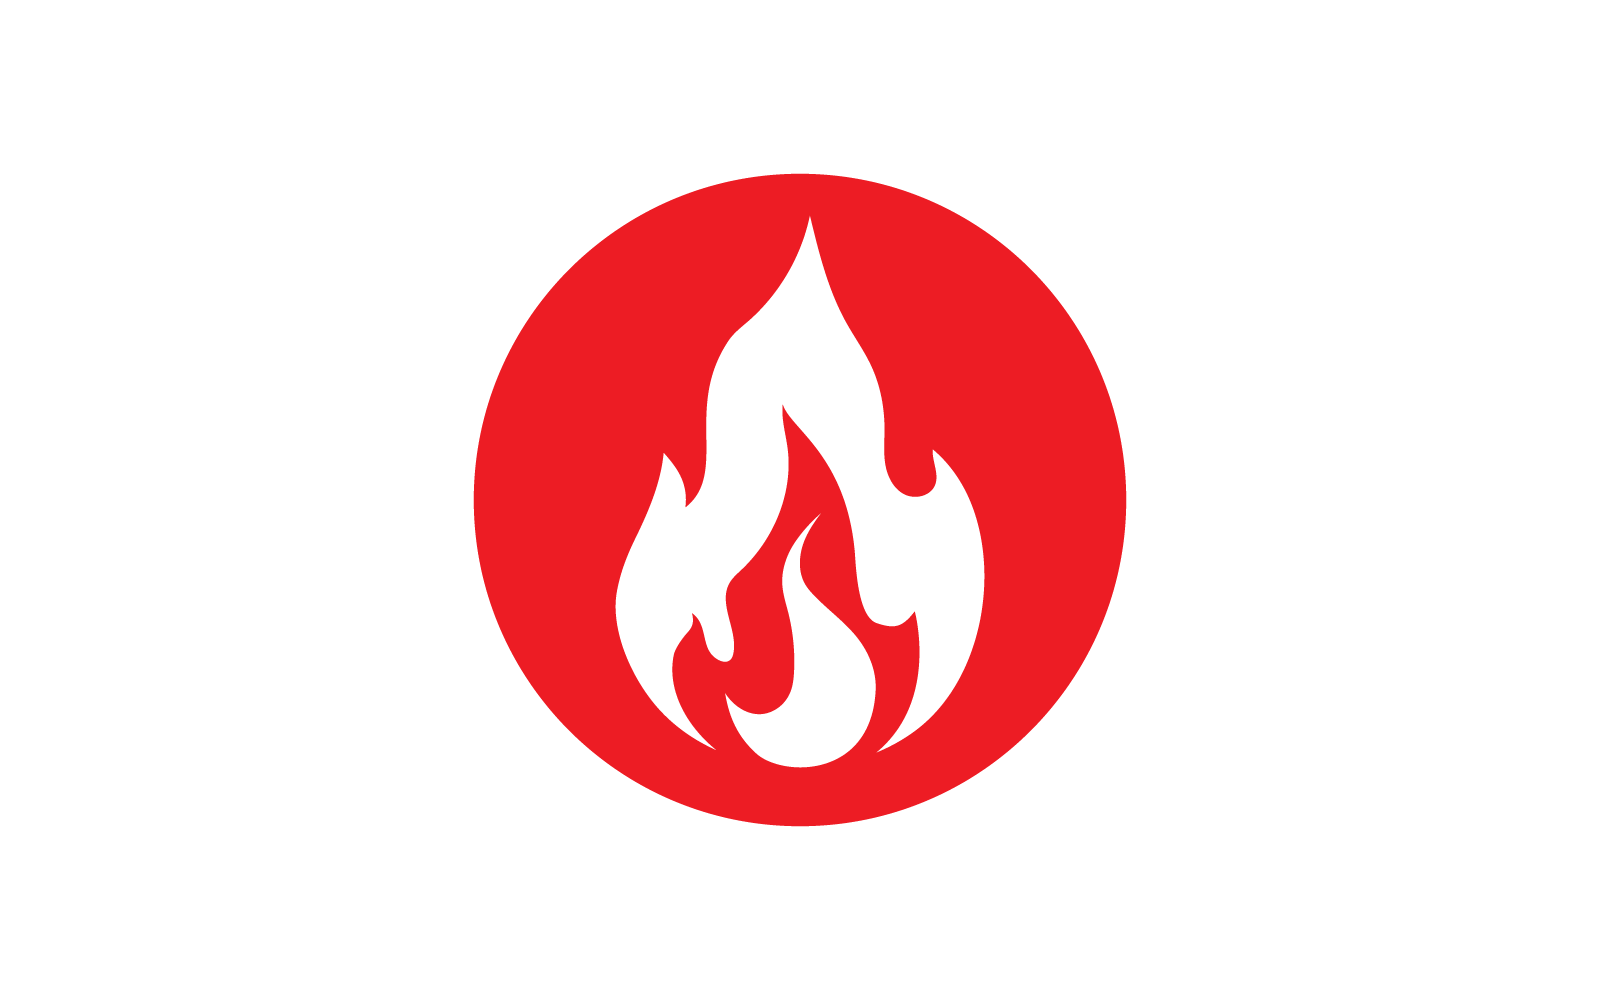 Fire flame Logo vector, Oil, gas and energy design logo concept